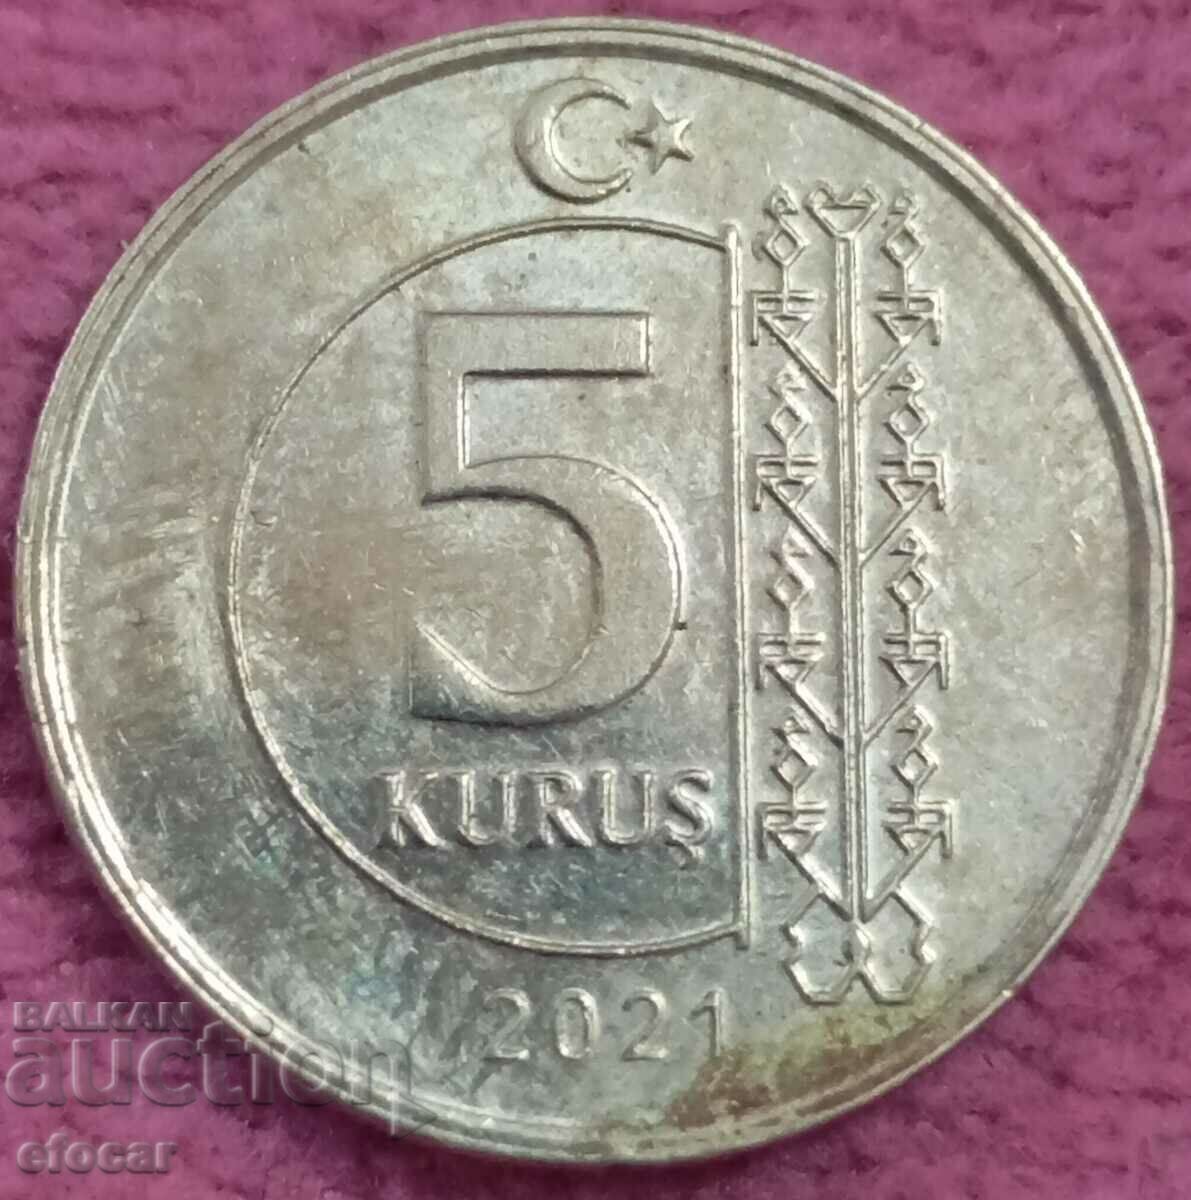 5 kuruş Turkey 2021 years